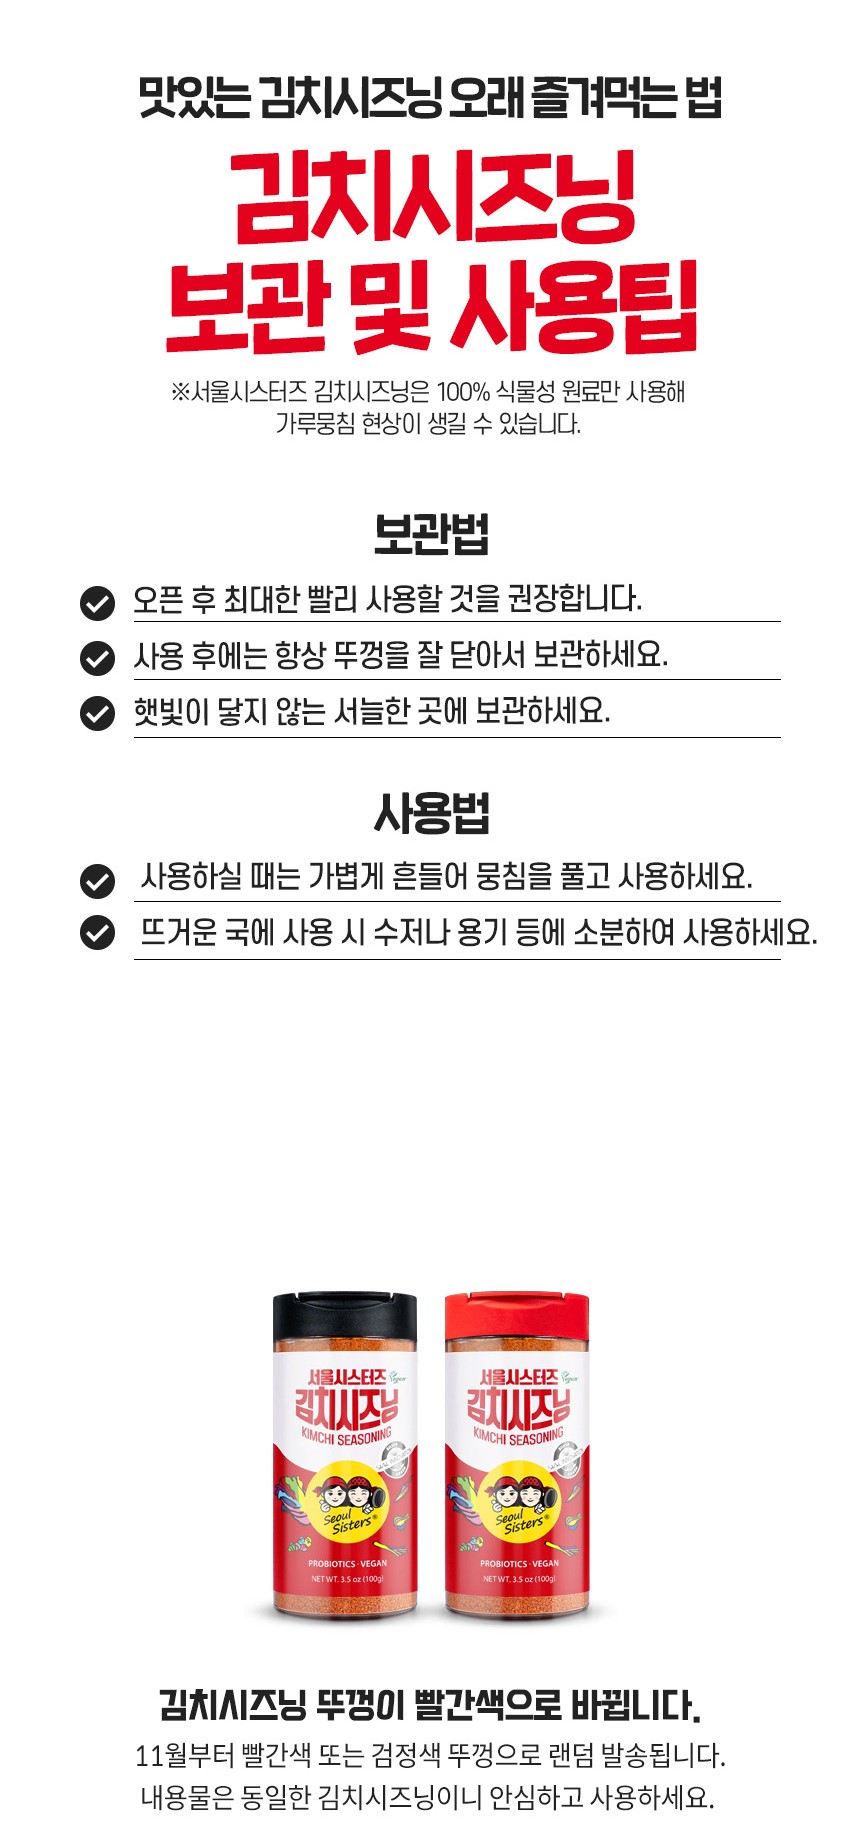 韓國食品-[서울시스터즈] 김치시즈닝 100g